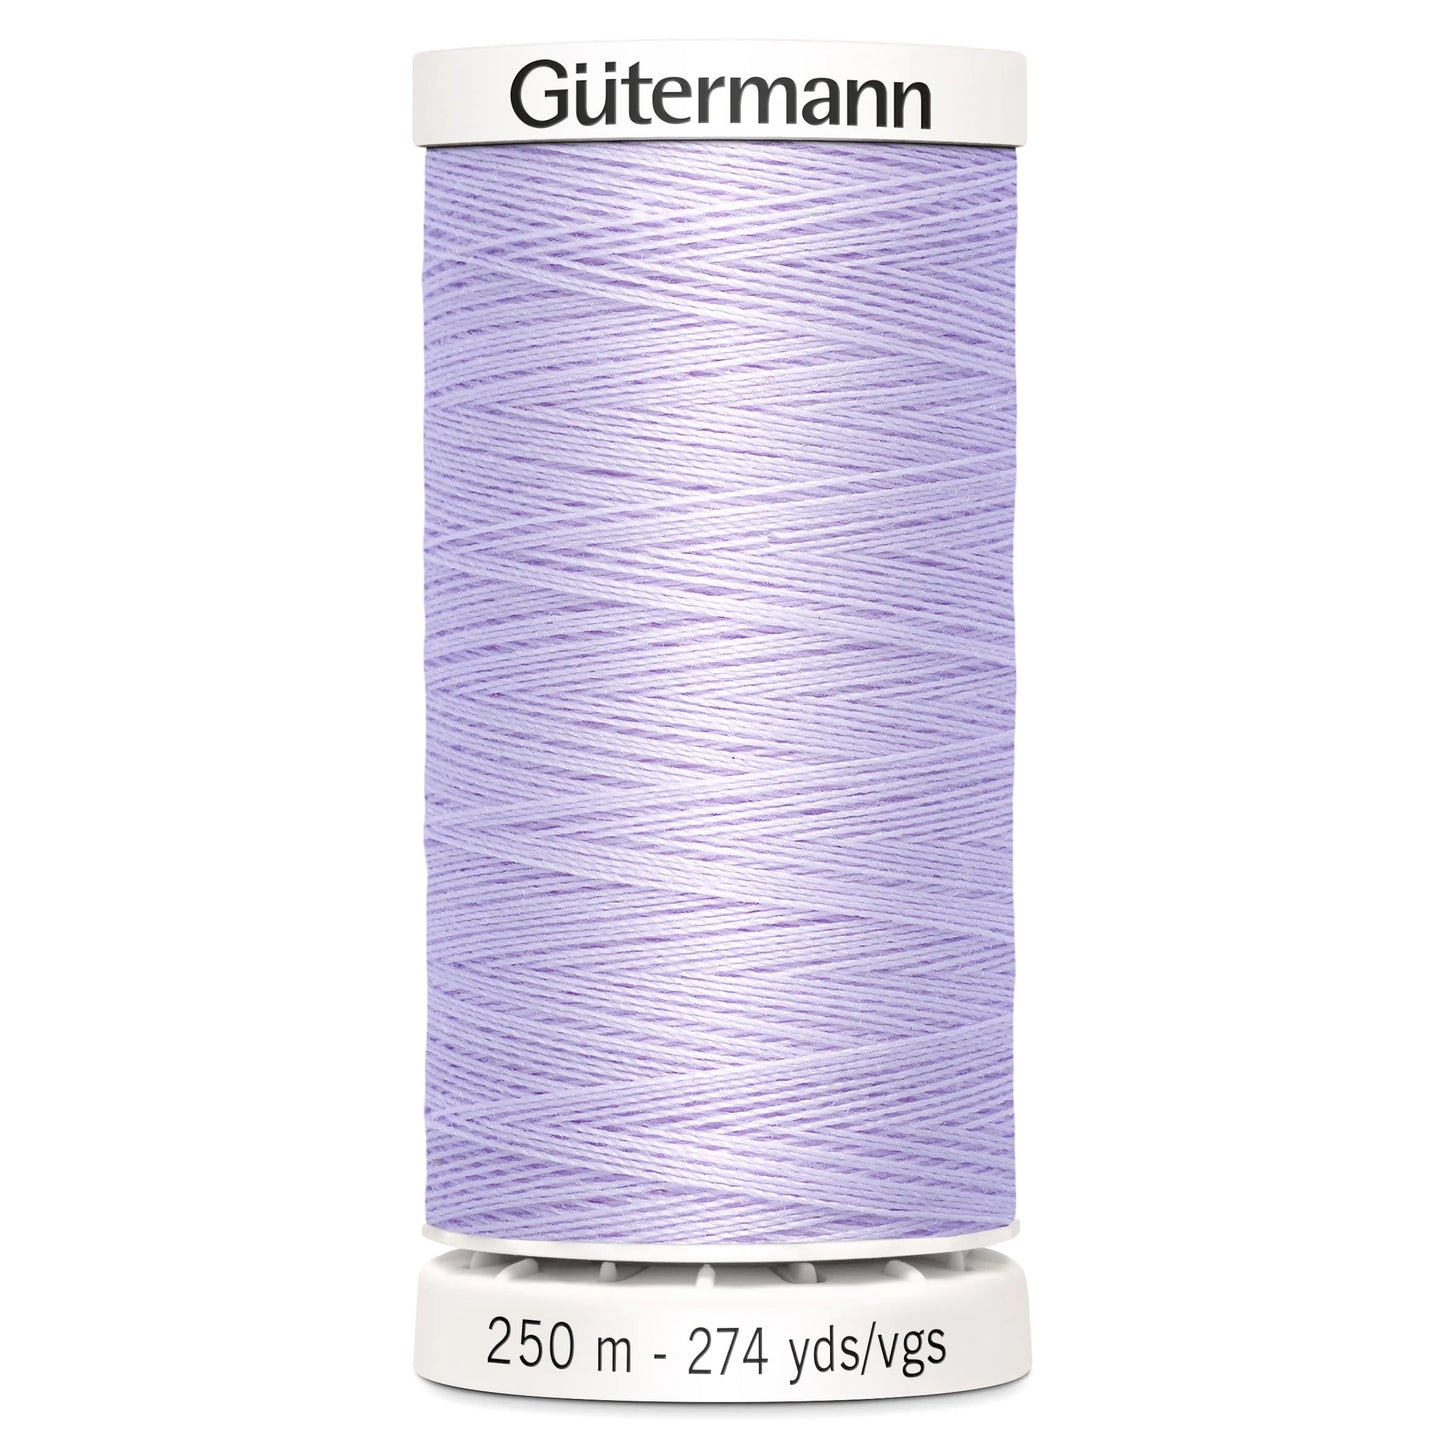 442 Gutermann Sew All 250m - Iris